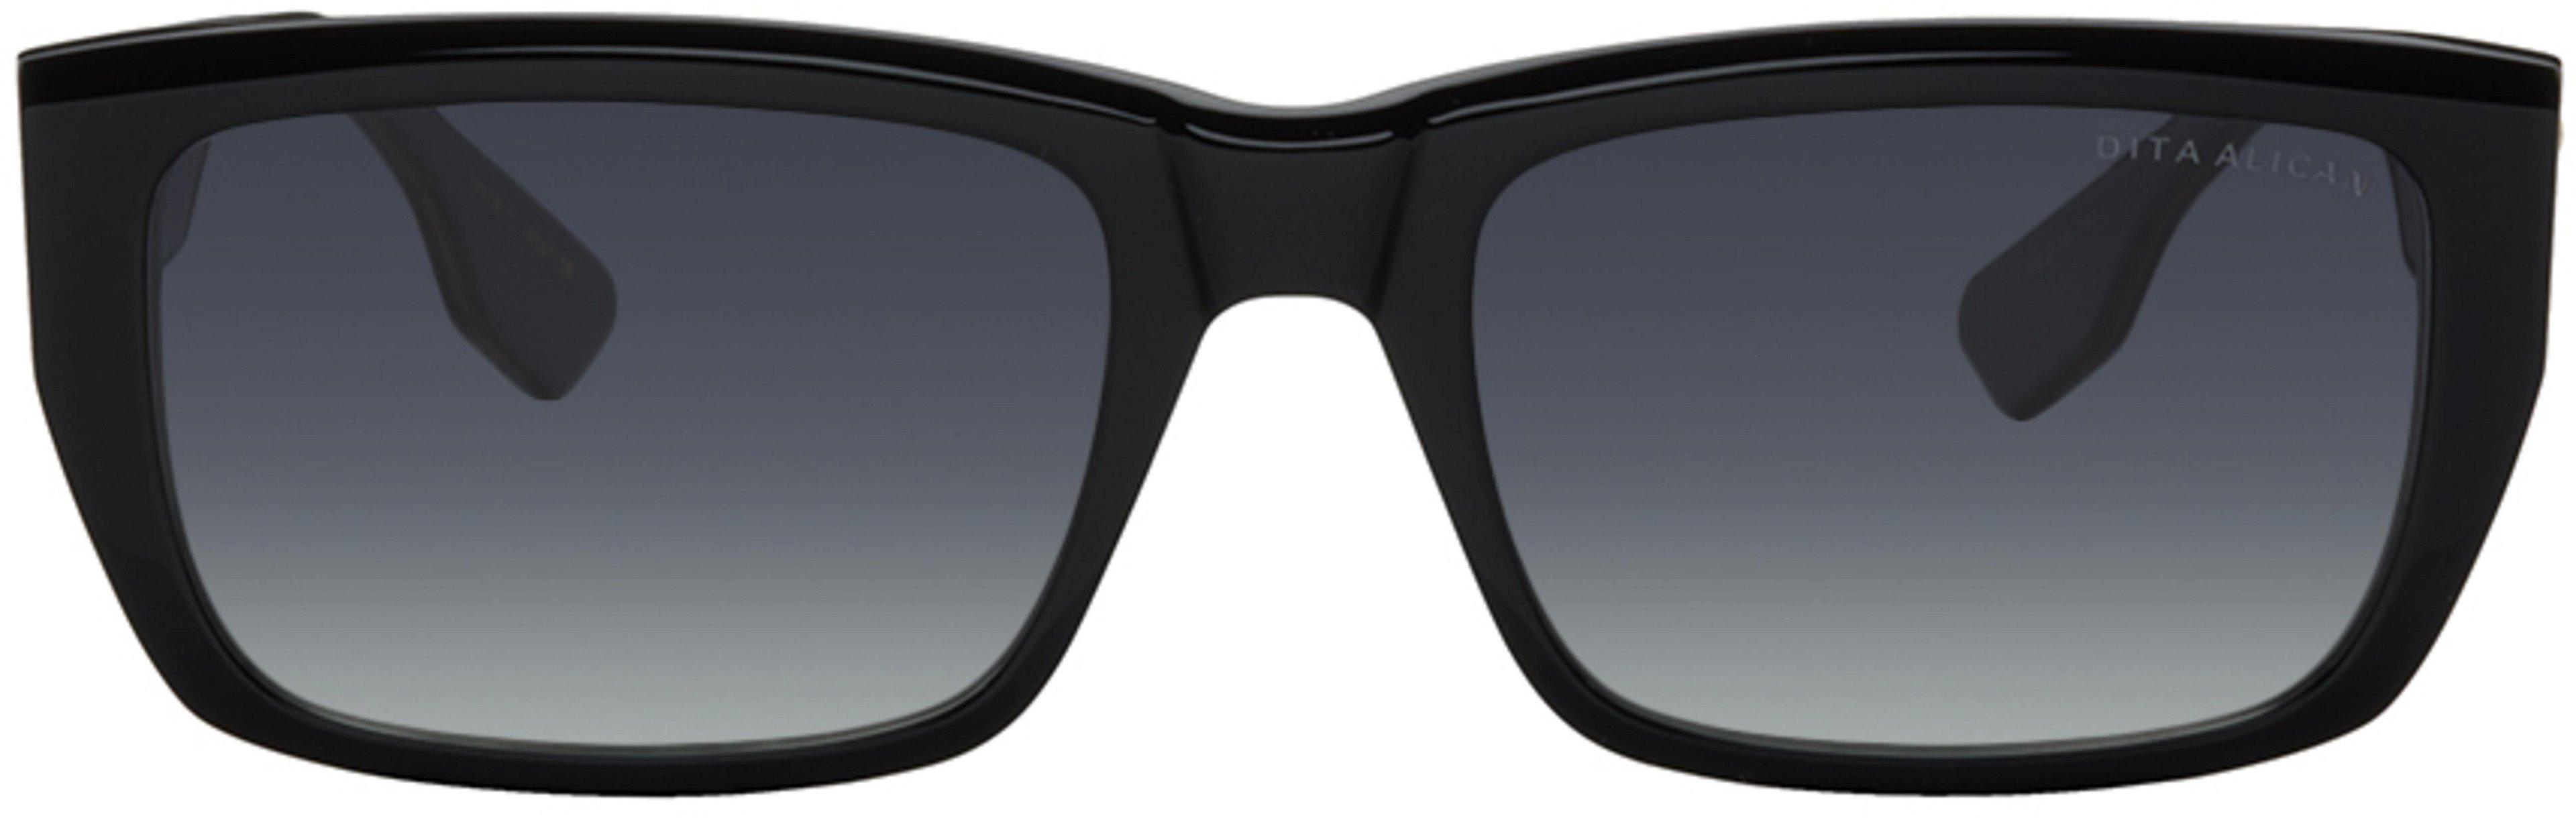 Black Alican Sunglasses by DITA